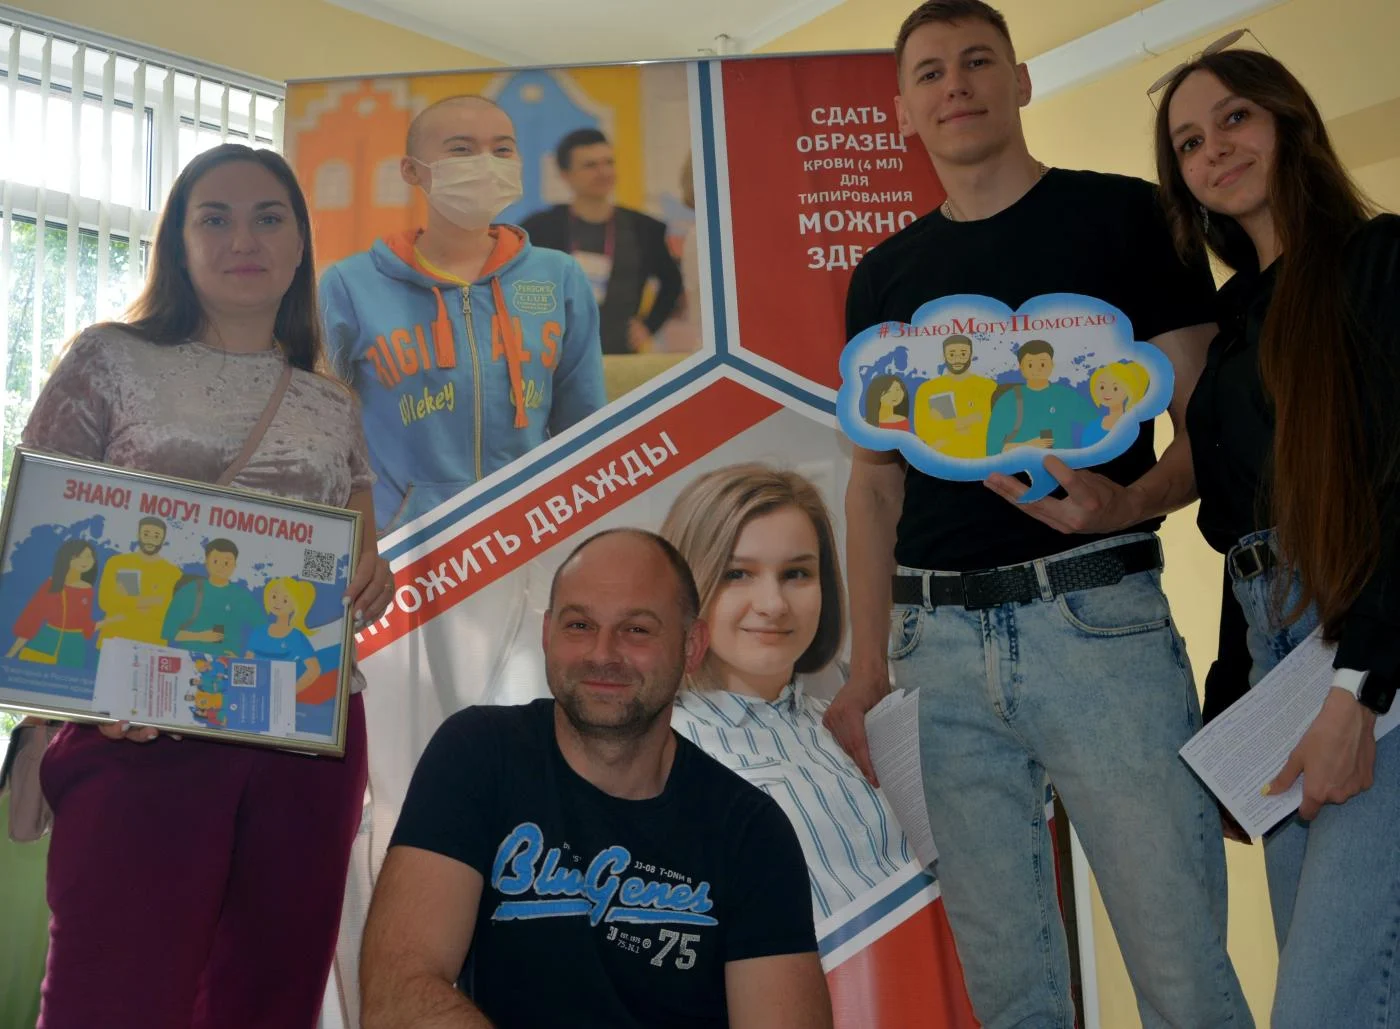 14 мая калининградские доноры присоединились к Всероссийской акции #ЗнаюМогуПомогаю, проводимой #ФМБА России с 17 апреля по 17 мая.